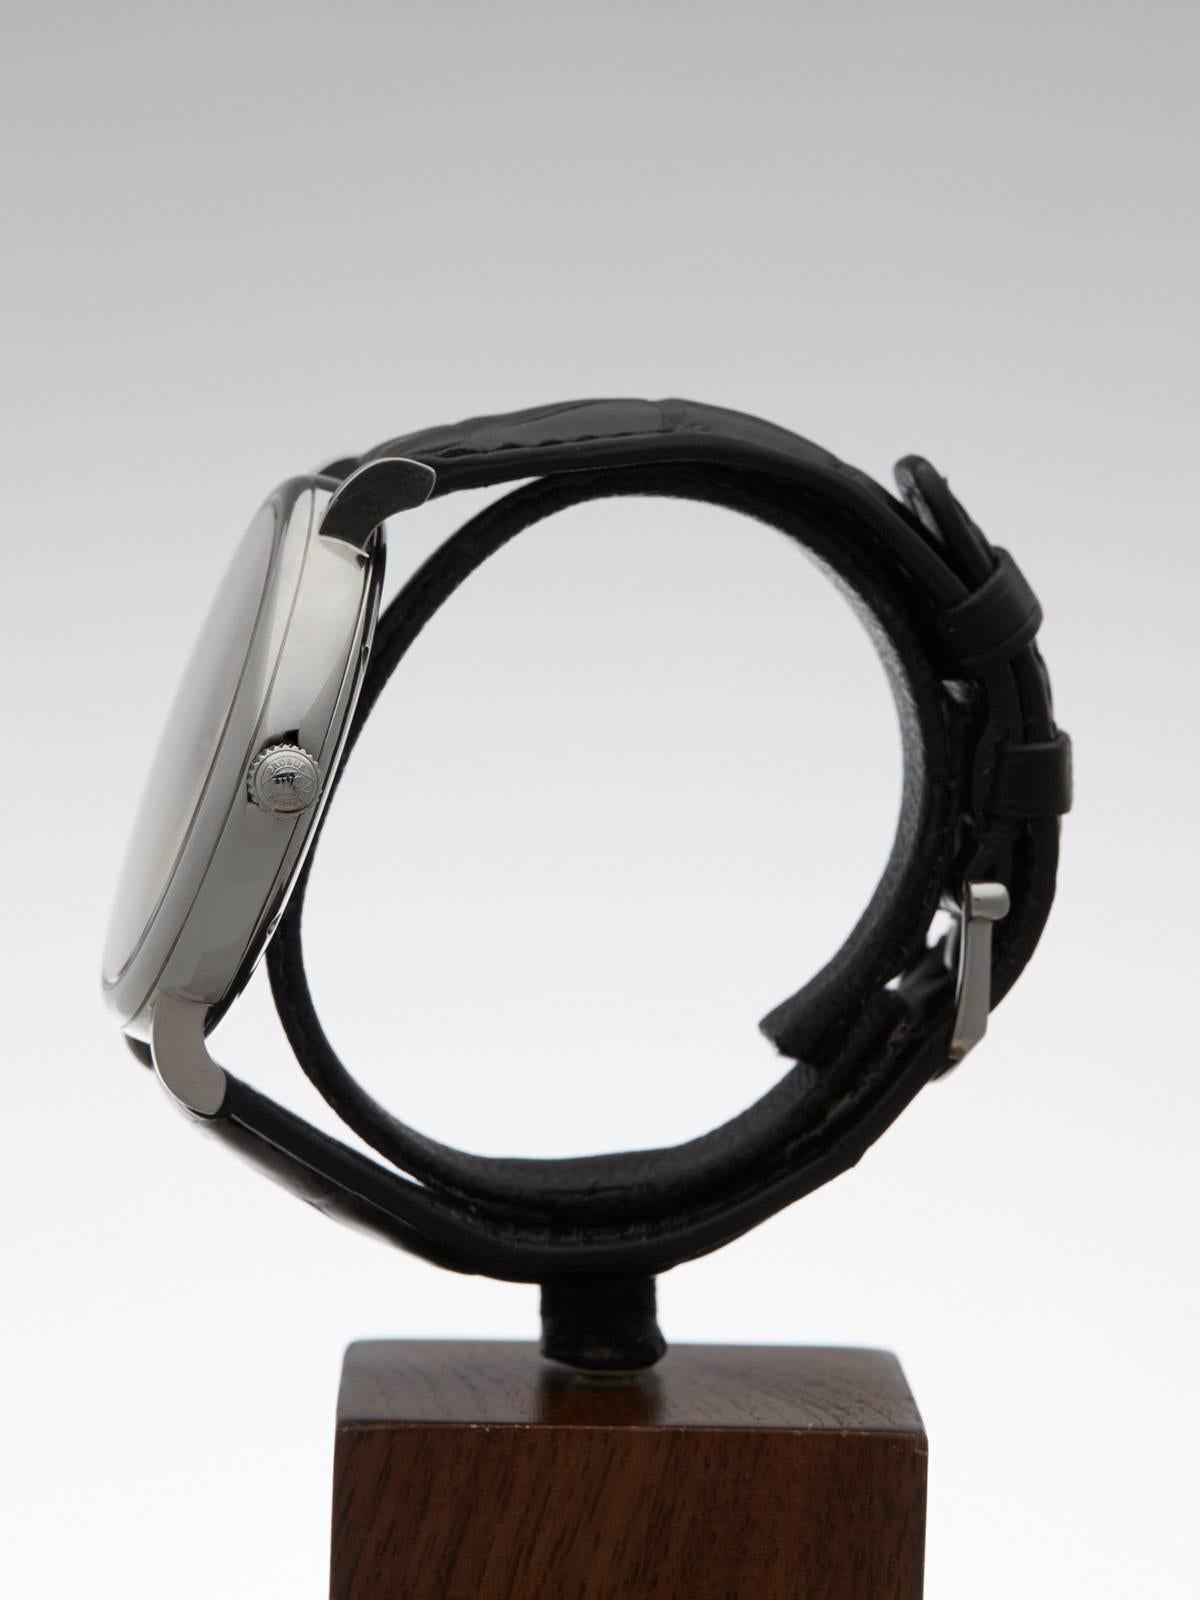  IWC Stainless Steel Portofino Automatic Wristwatch Ref IW356507 2014 1